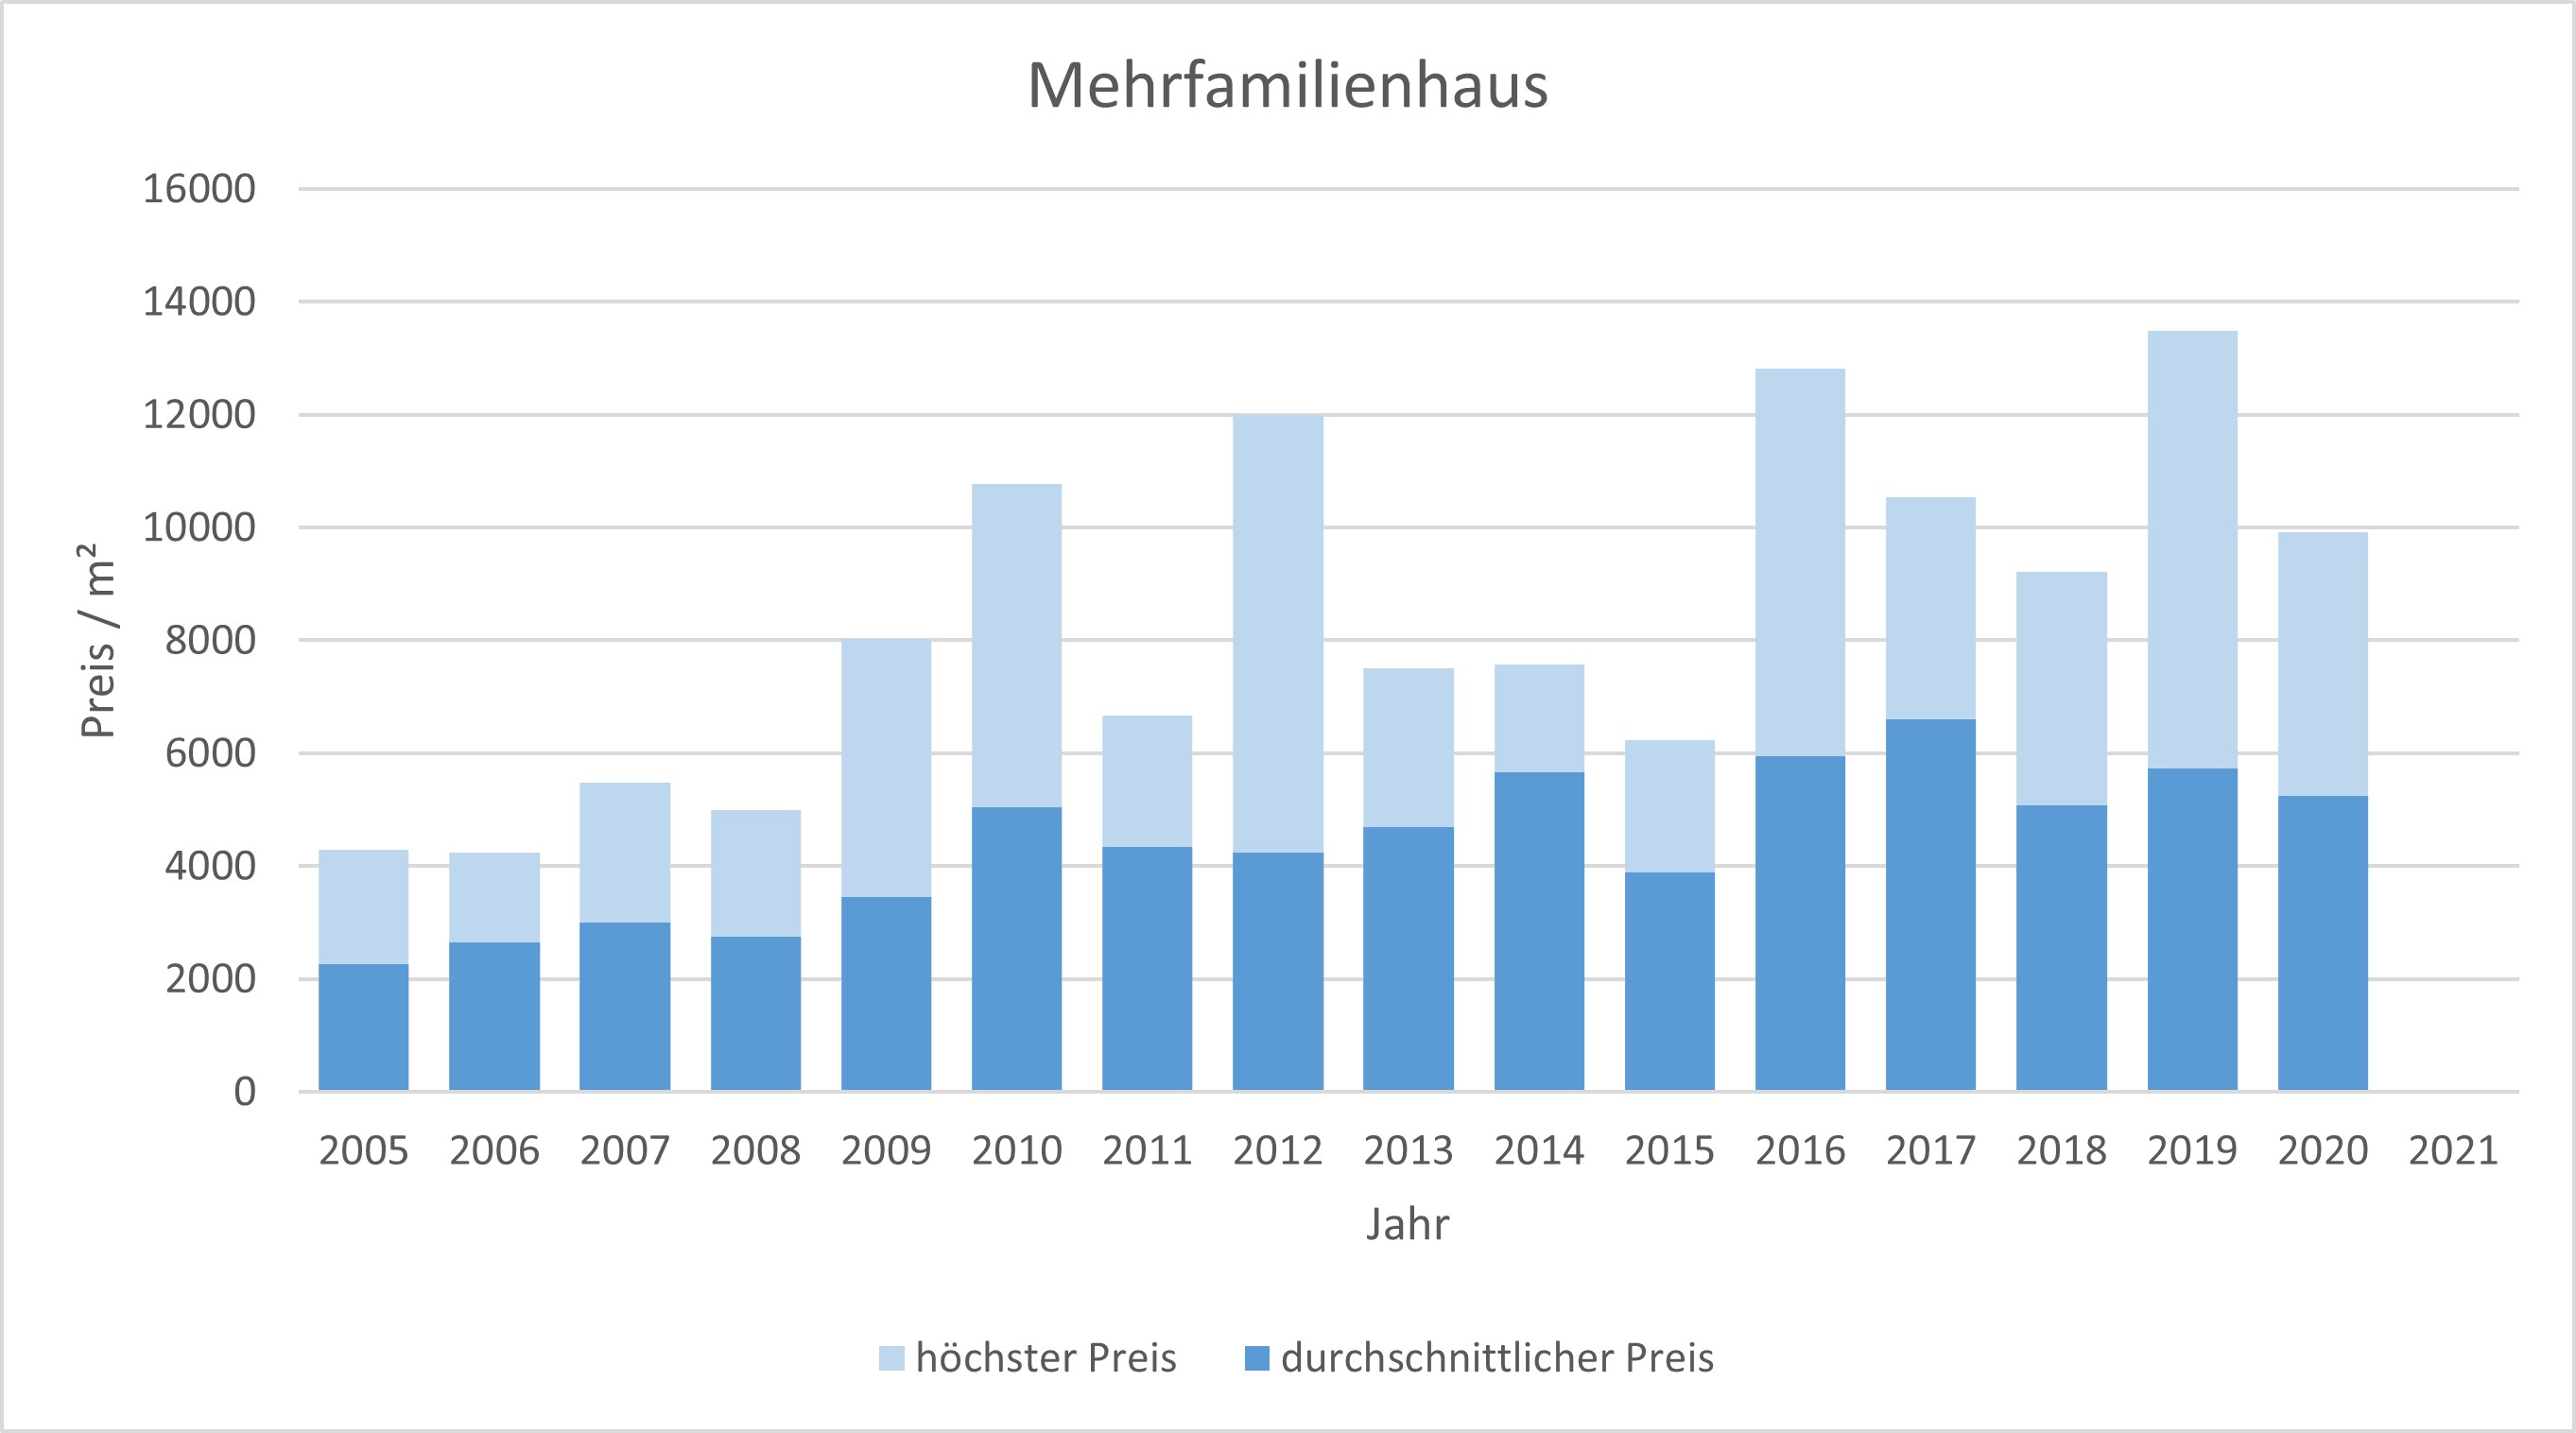 München - Altstadt Mehrfamilienhaus kaufen verkaufen Preis Bewertung Makler 2019 2020 2021 www.happy-immo.de